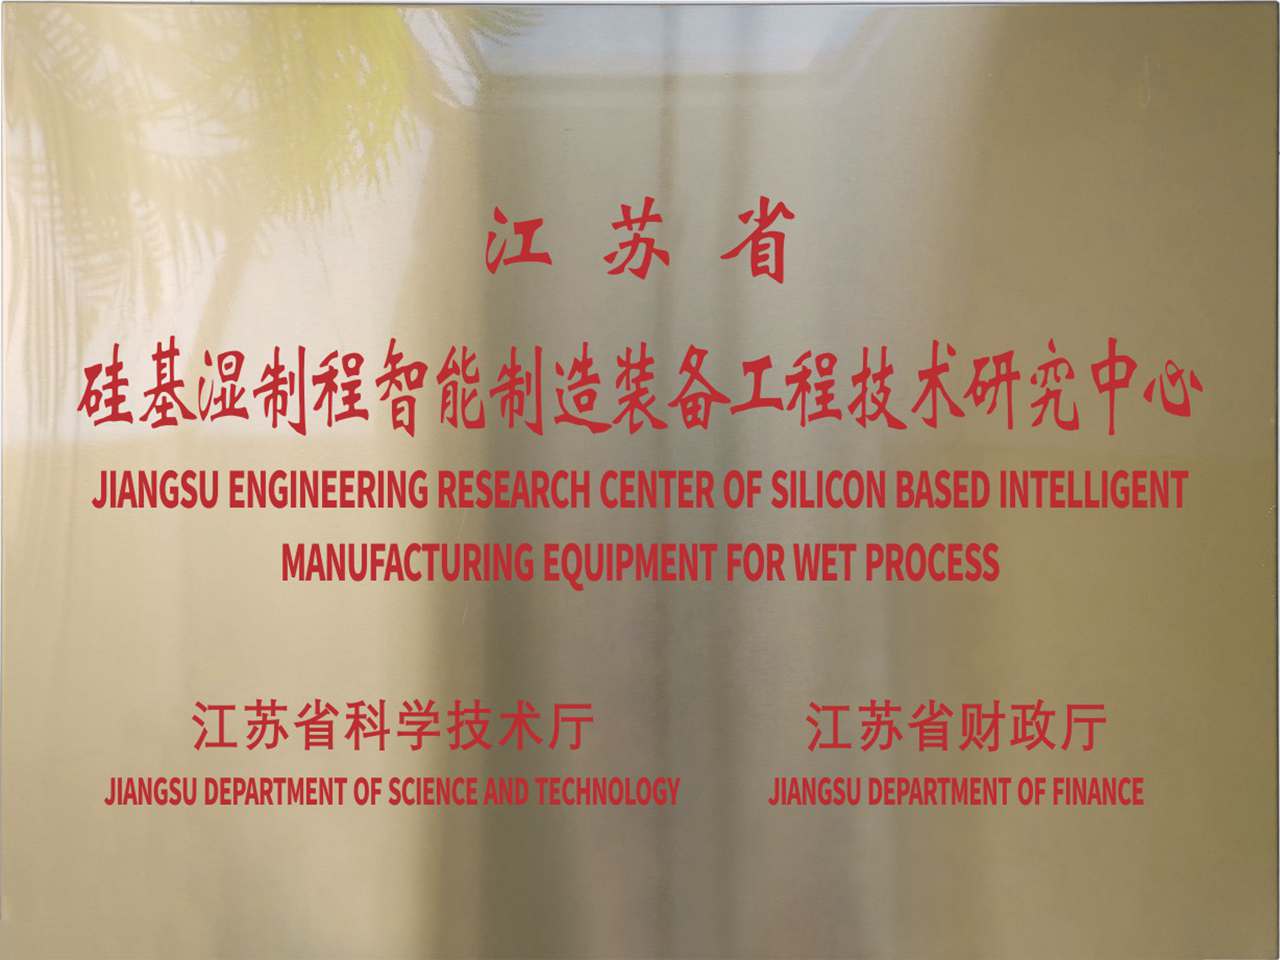 江苏省硅基湿制程智能制造装备工程手艺研究中央